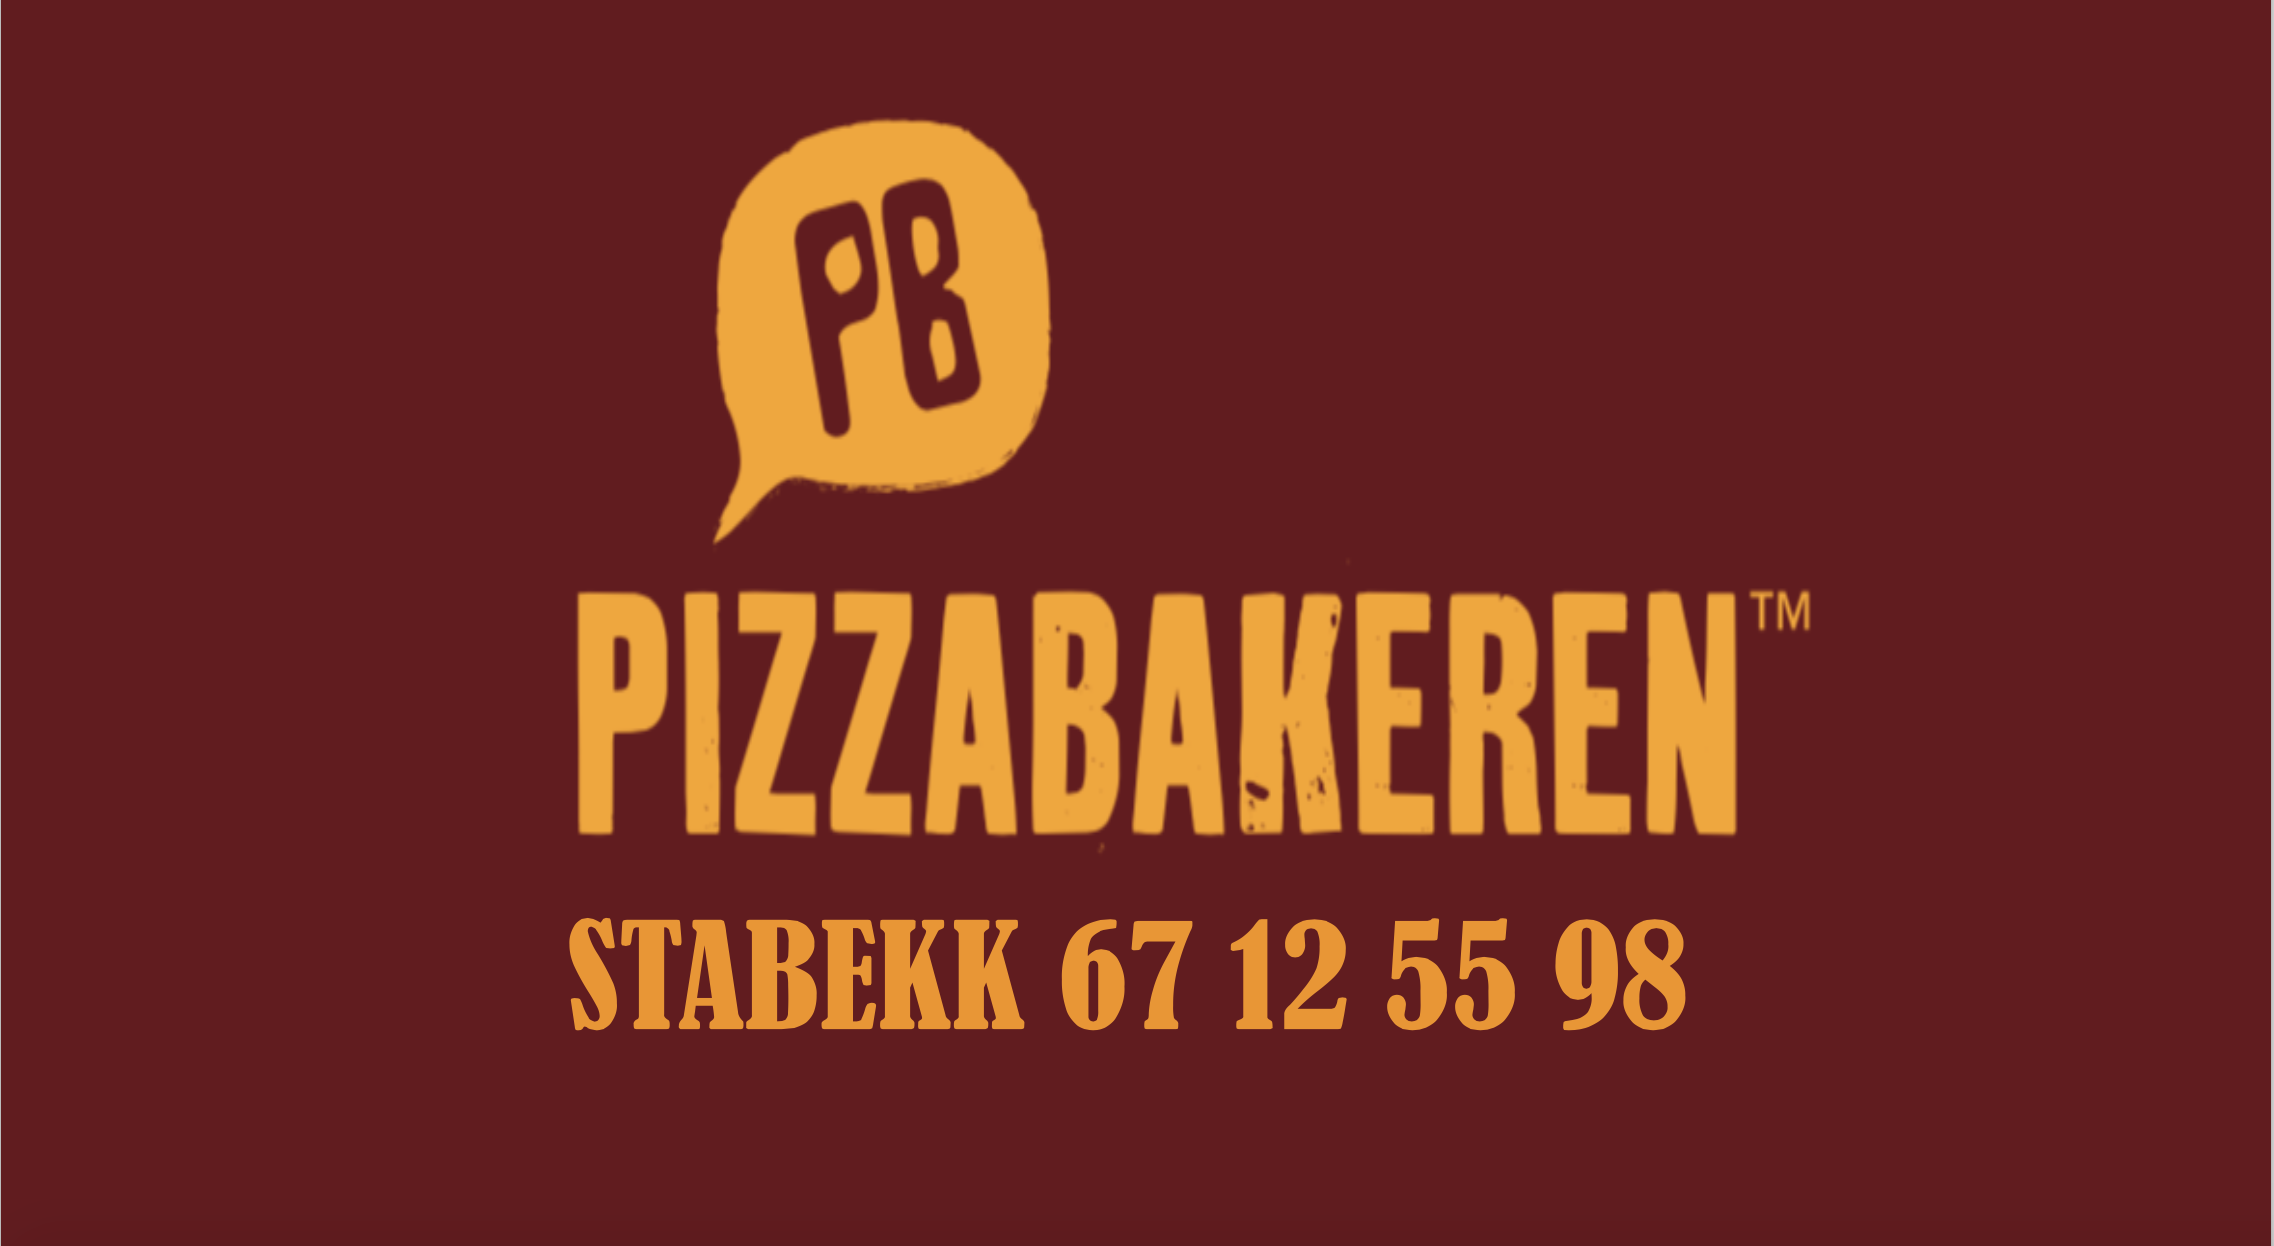 pizzabakeren.png